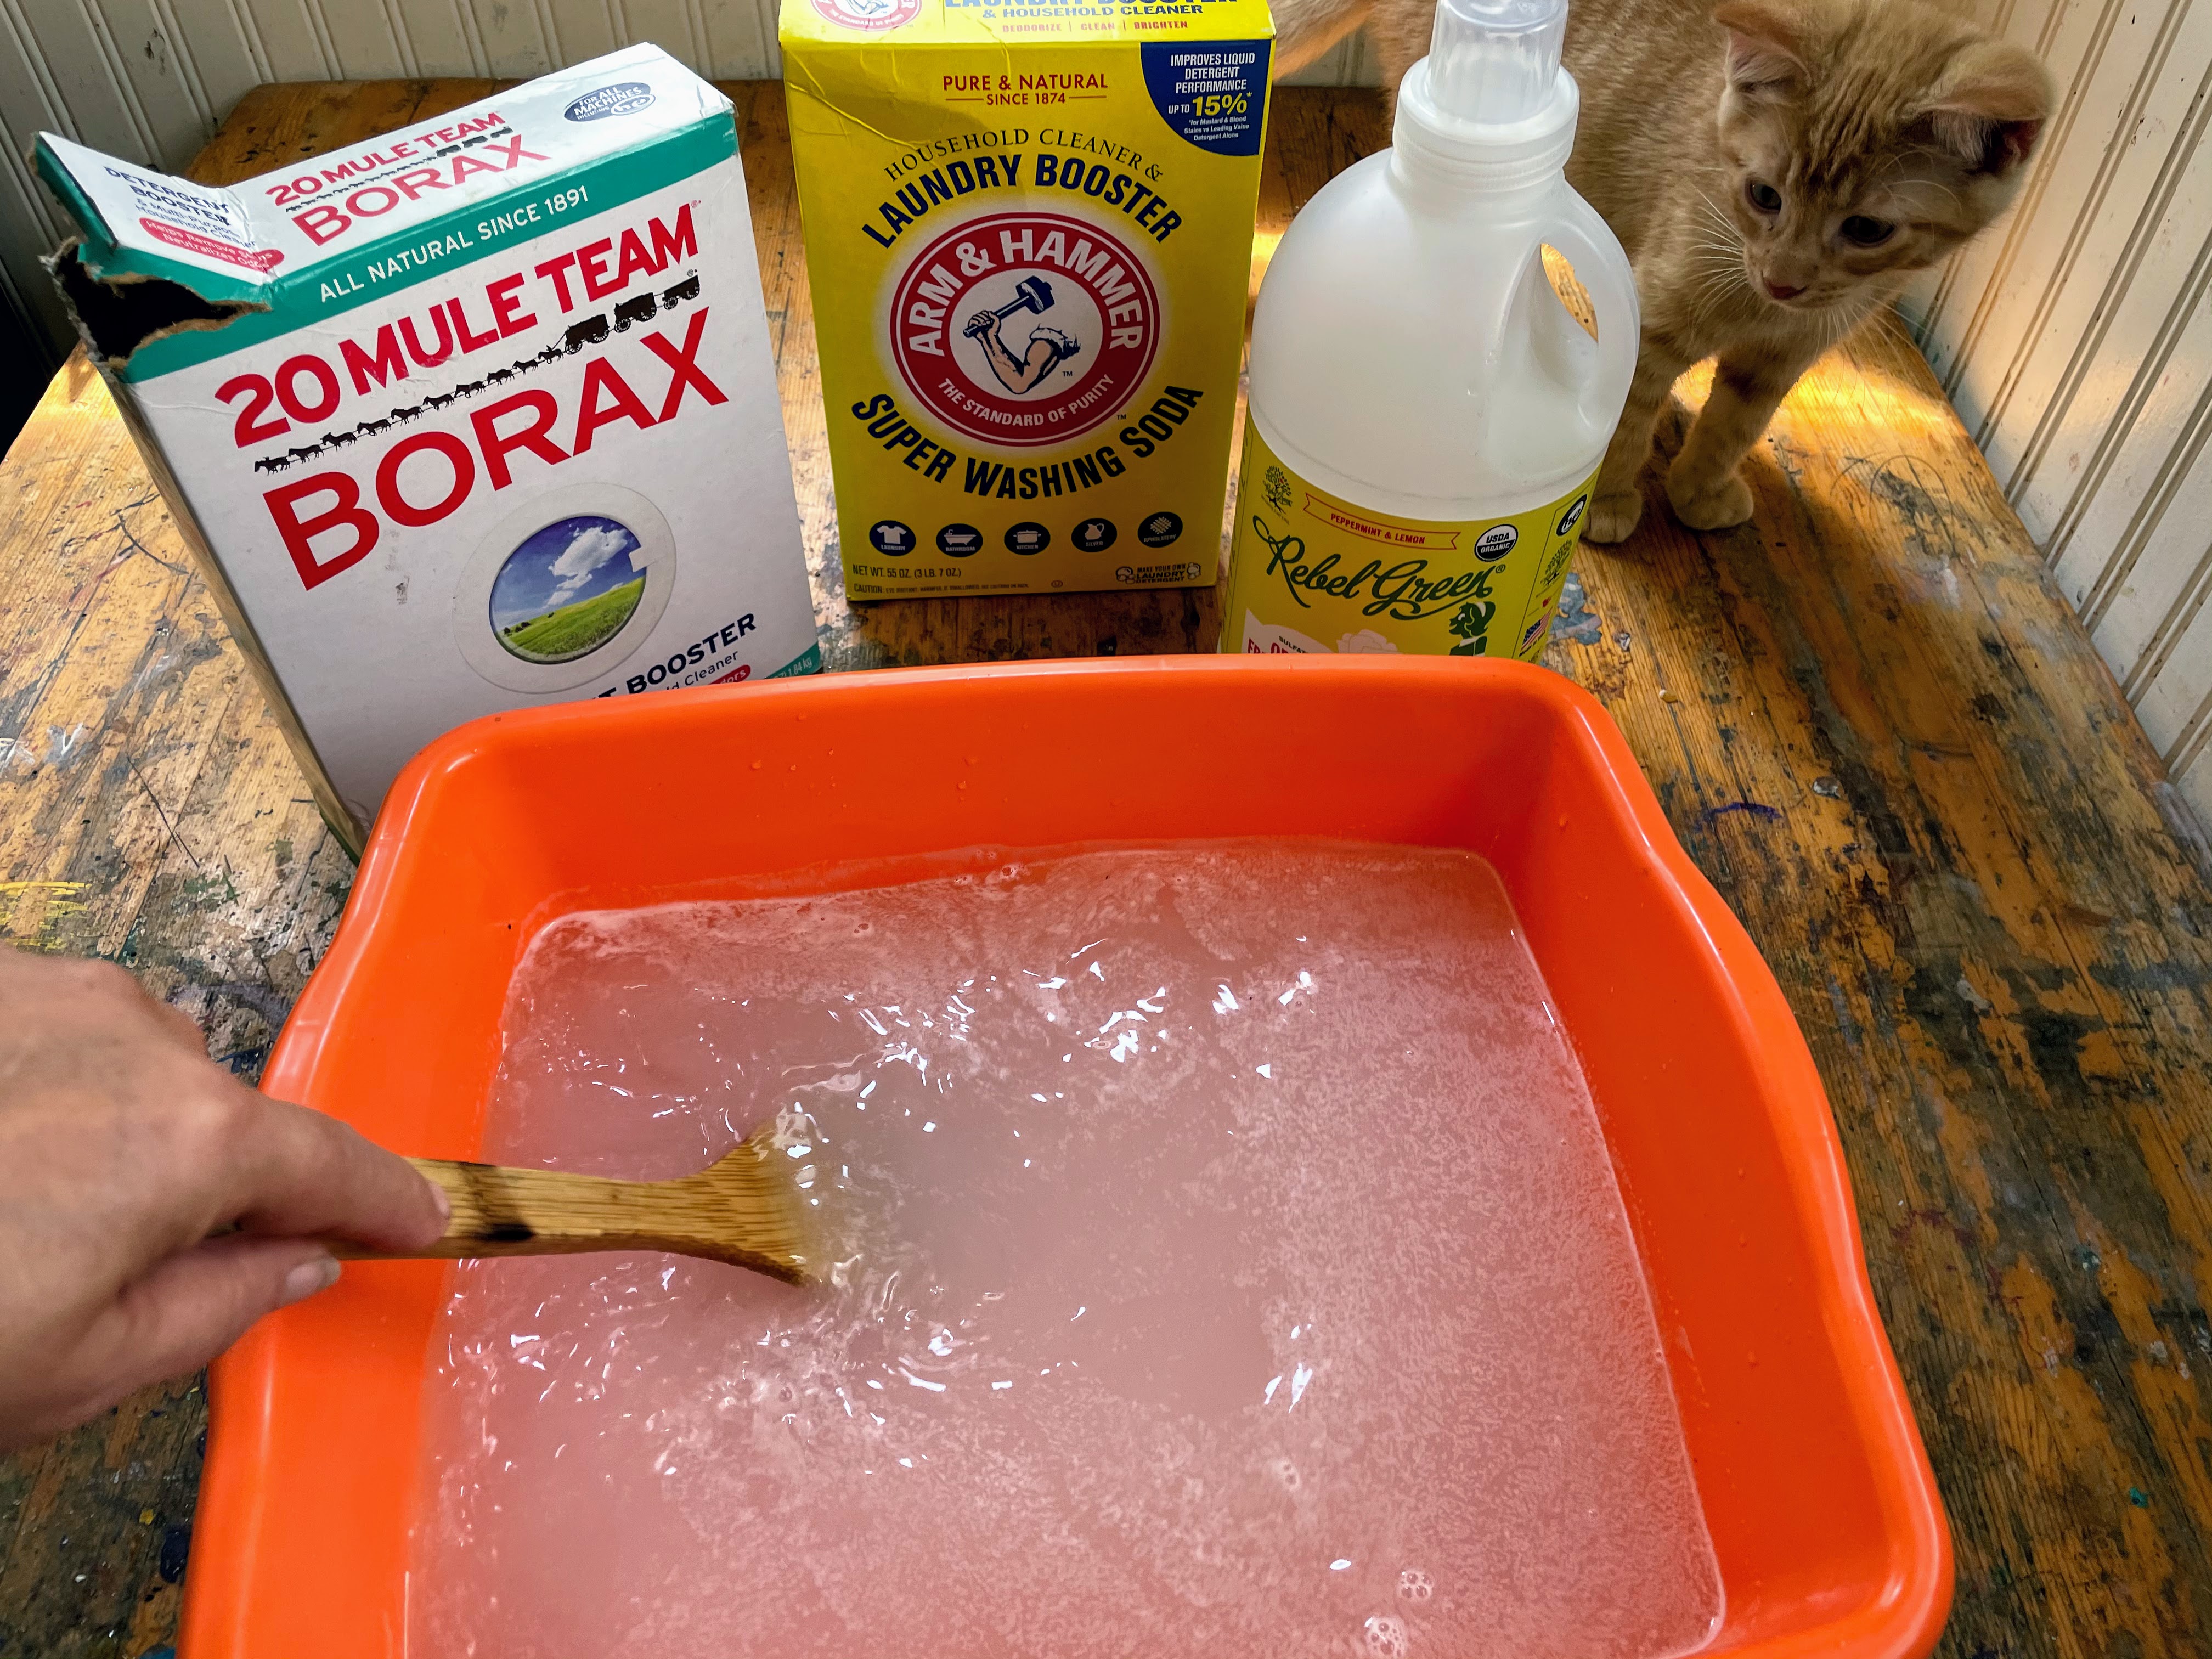 Pure Original Ingredients Borax Powder(2 lb) Sodium Borate, Multipurpose  Cleaning Agent, Ideal Slime Ingredient